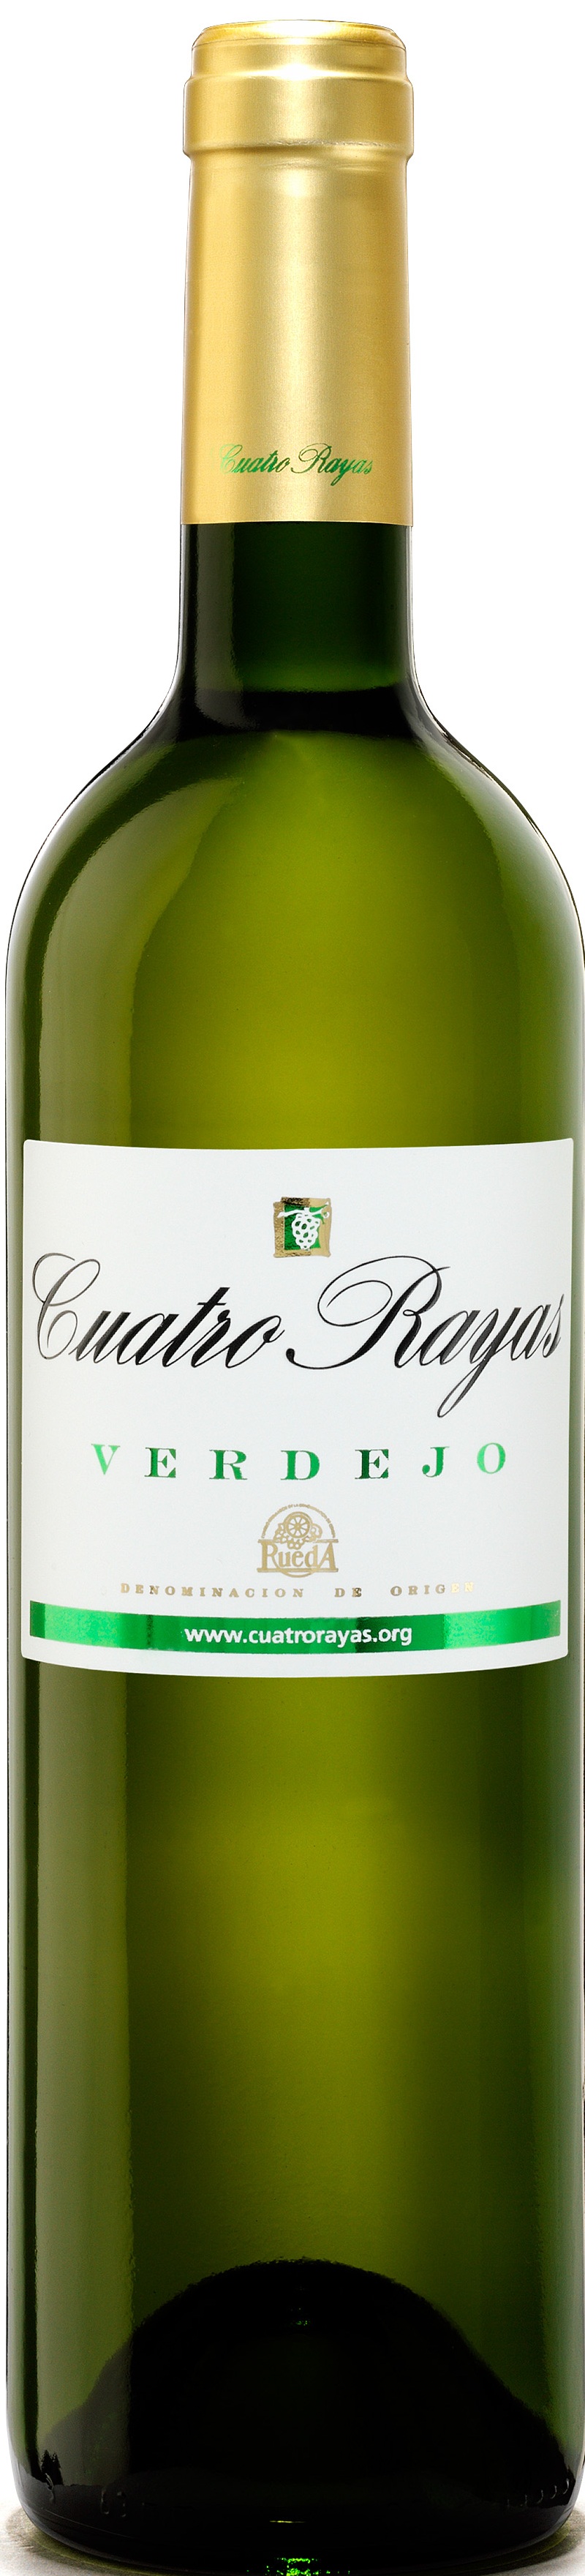 Imagen de la botella de Vino Cuatro Rayas Verdejo